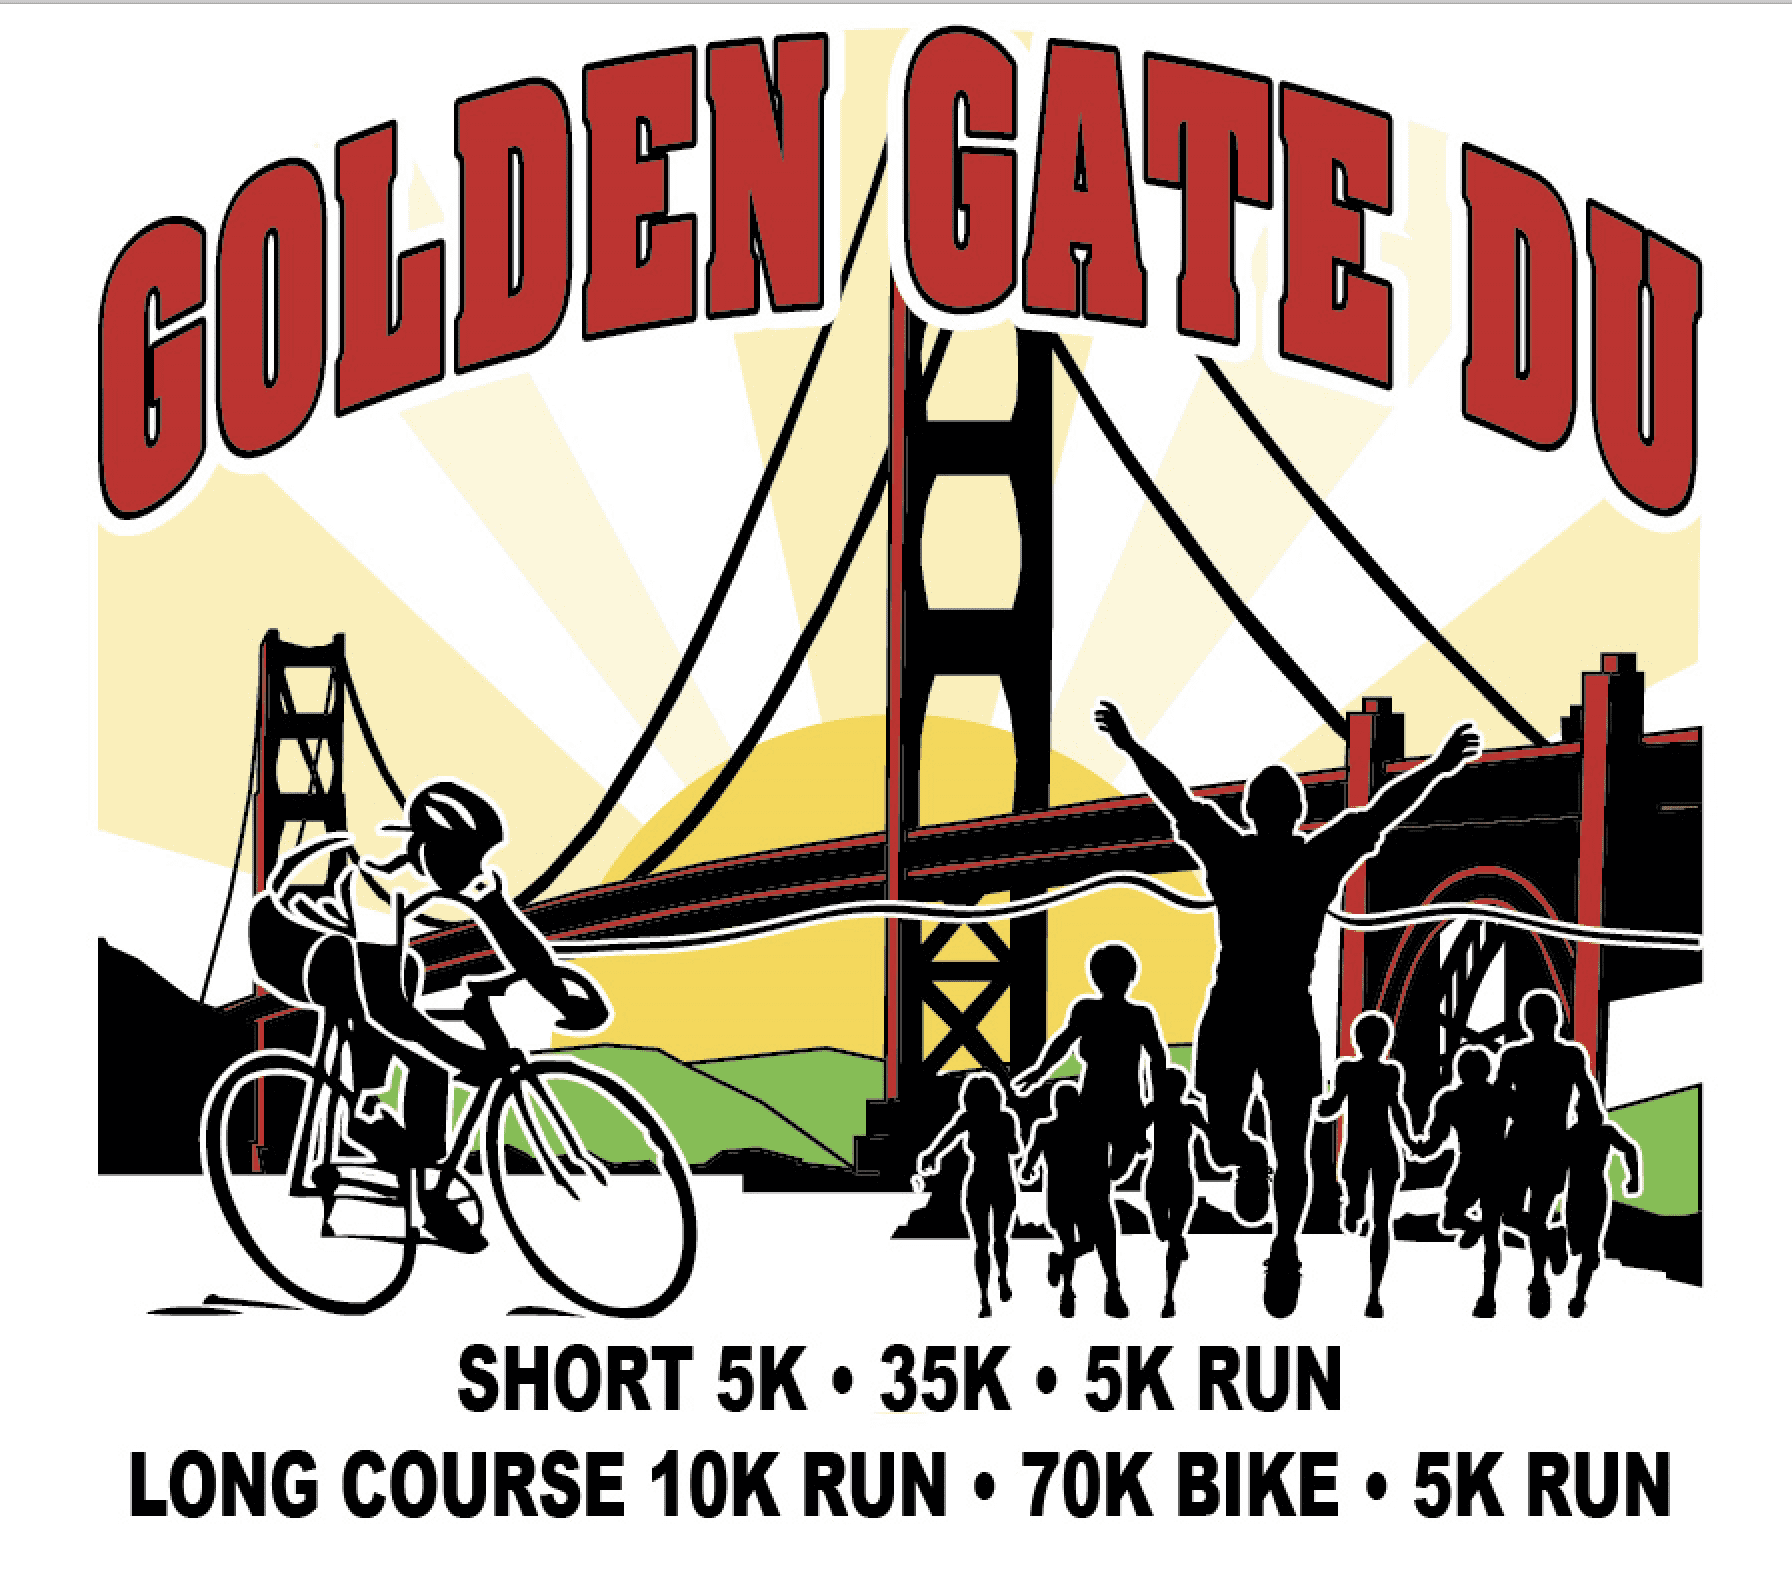 Golden Gate Du & 5 Mile Run logo on RaceRaves